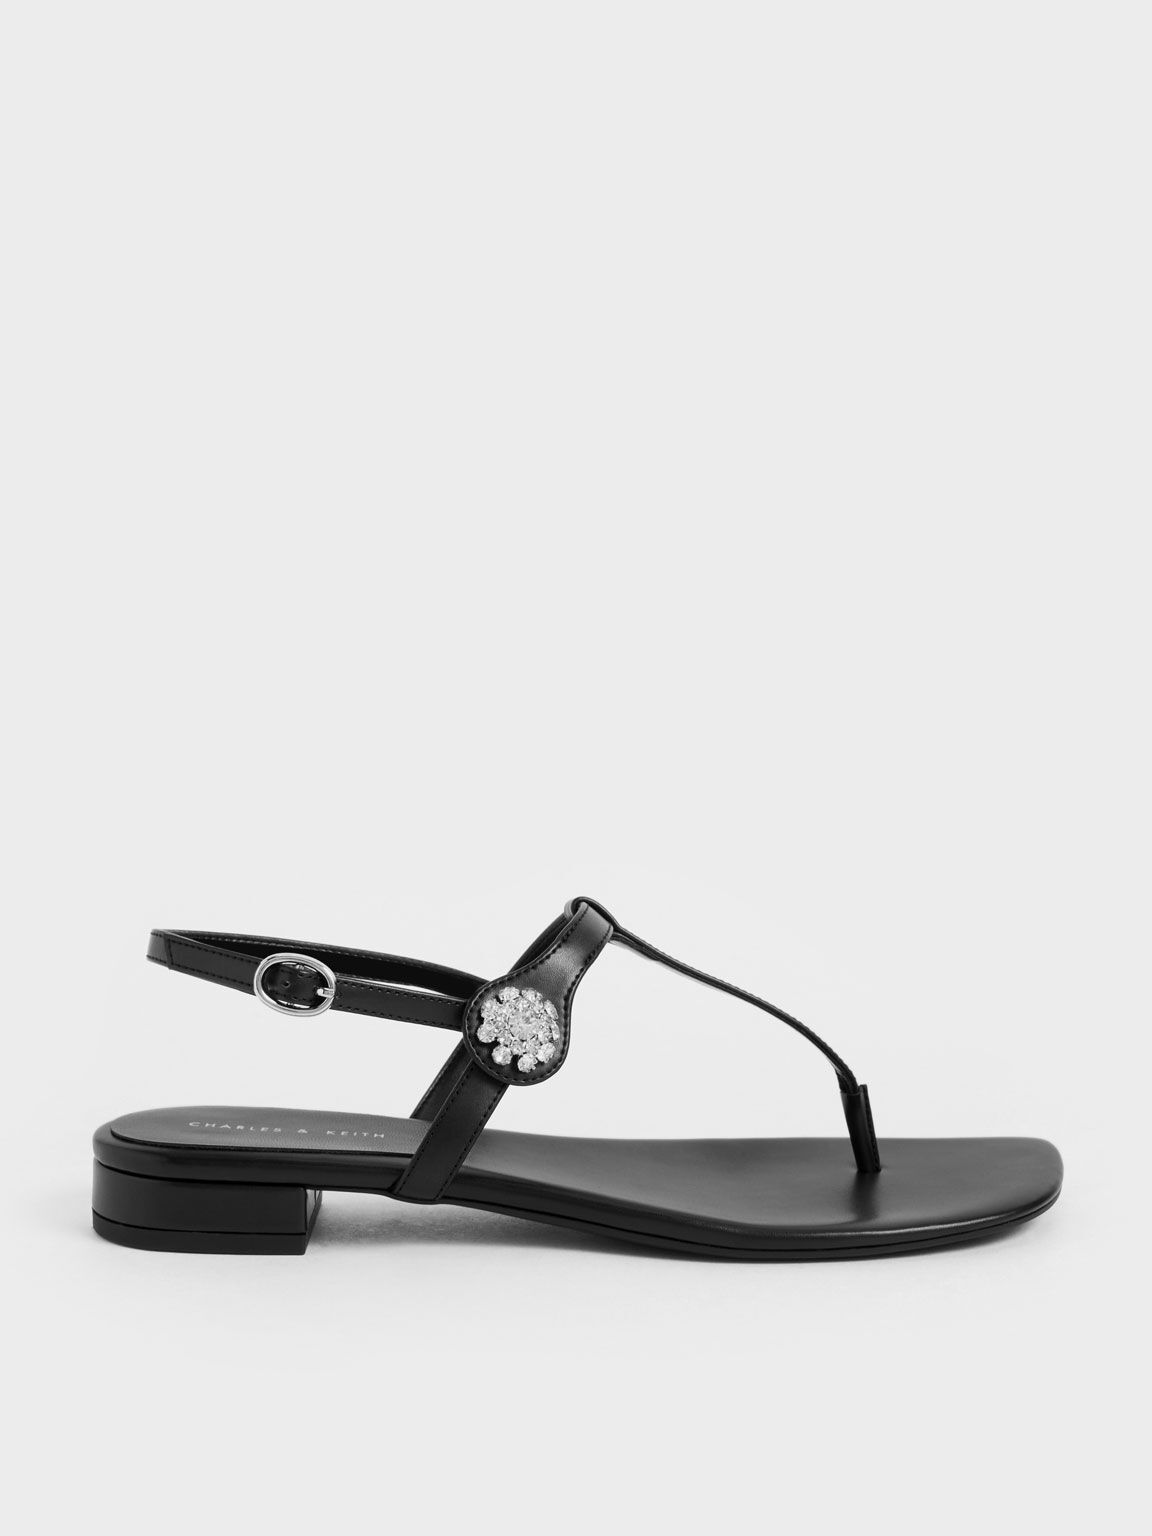 Gem-Embellished Thong Sandals, Black, hi-res